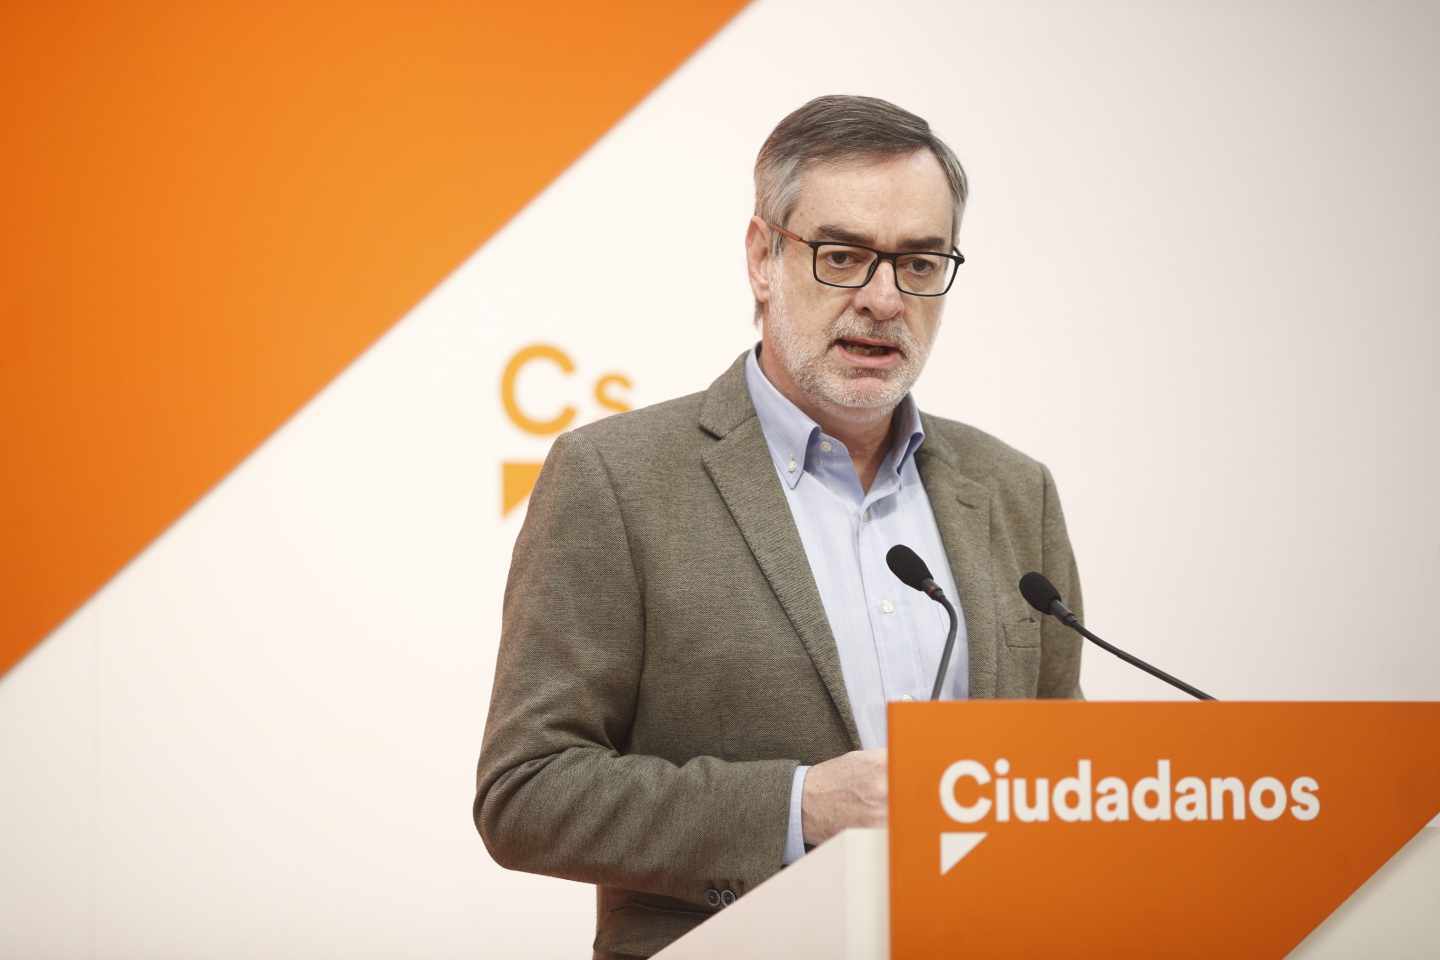 Ciudadanos dice que no cambiará "ni una coma" del pacto con el PP en Andalucía